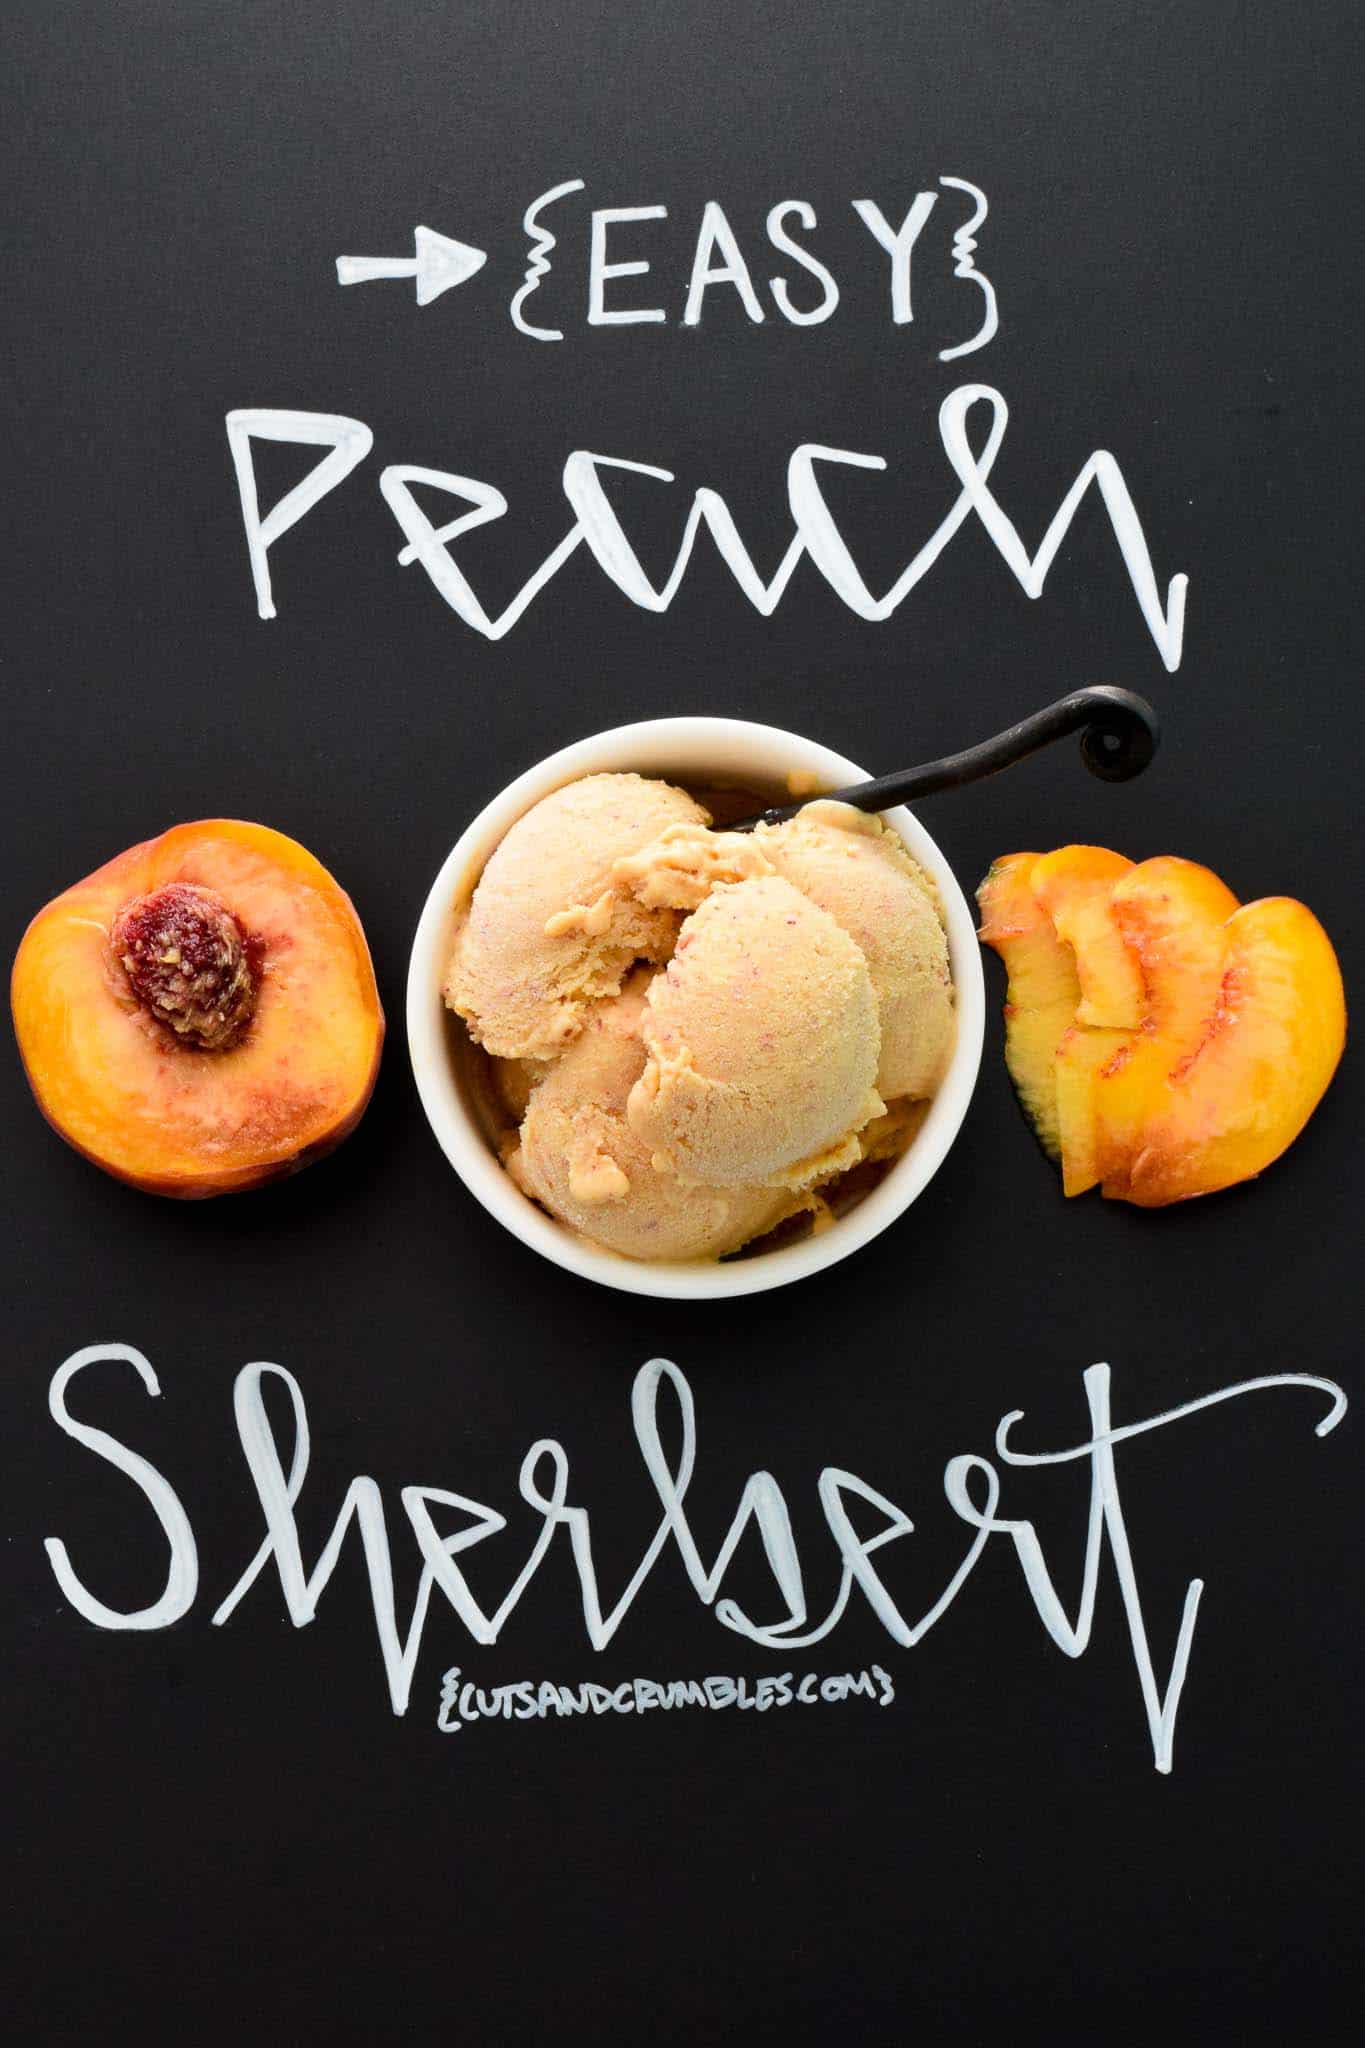 Easy Peach Sherbert with title written on chalkboard